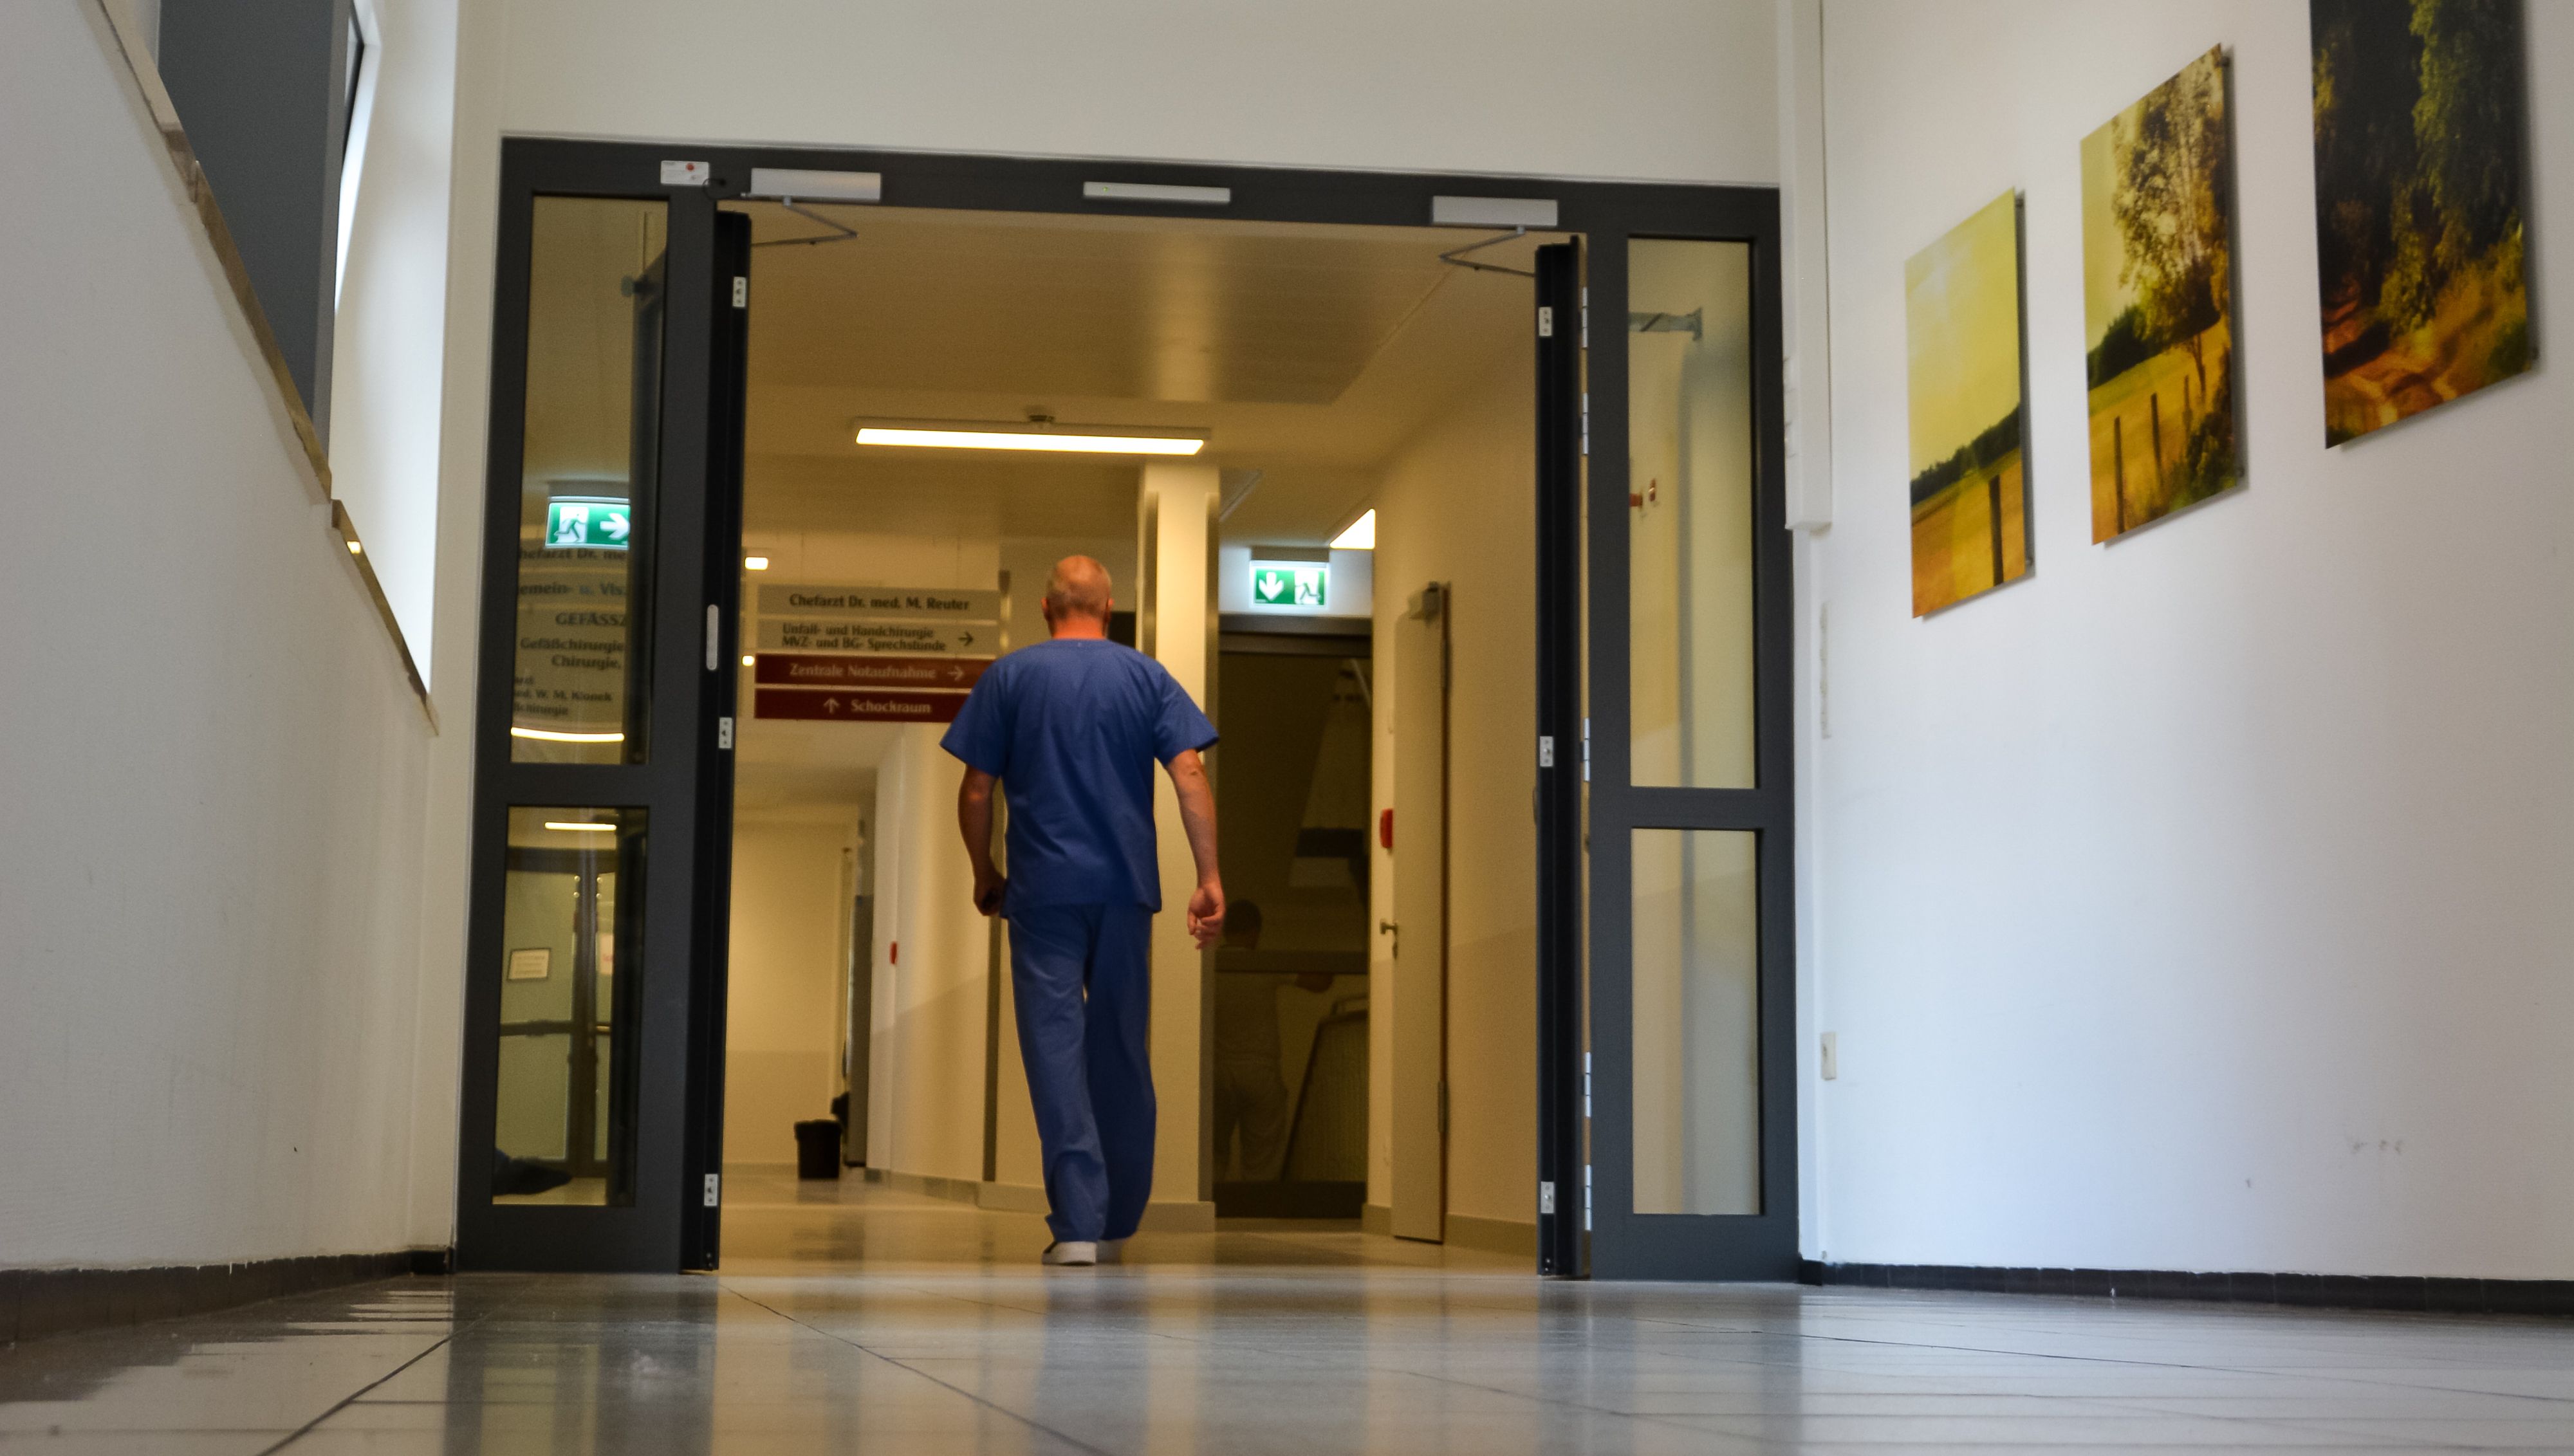 Wohin führt der Weg? Die Schwester-Euthymia-Stiftung möchte Zukunftsmöglichkeiten der Krankenhäuser im Kreis Cloppenburg offen diskutieren. Symbolfoto: Hermes